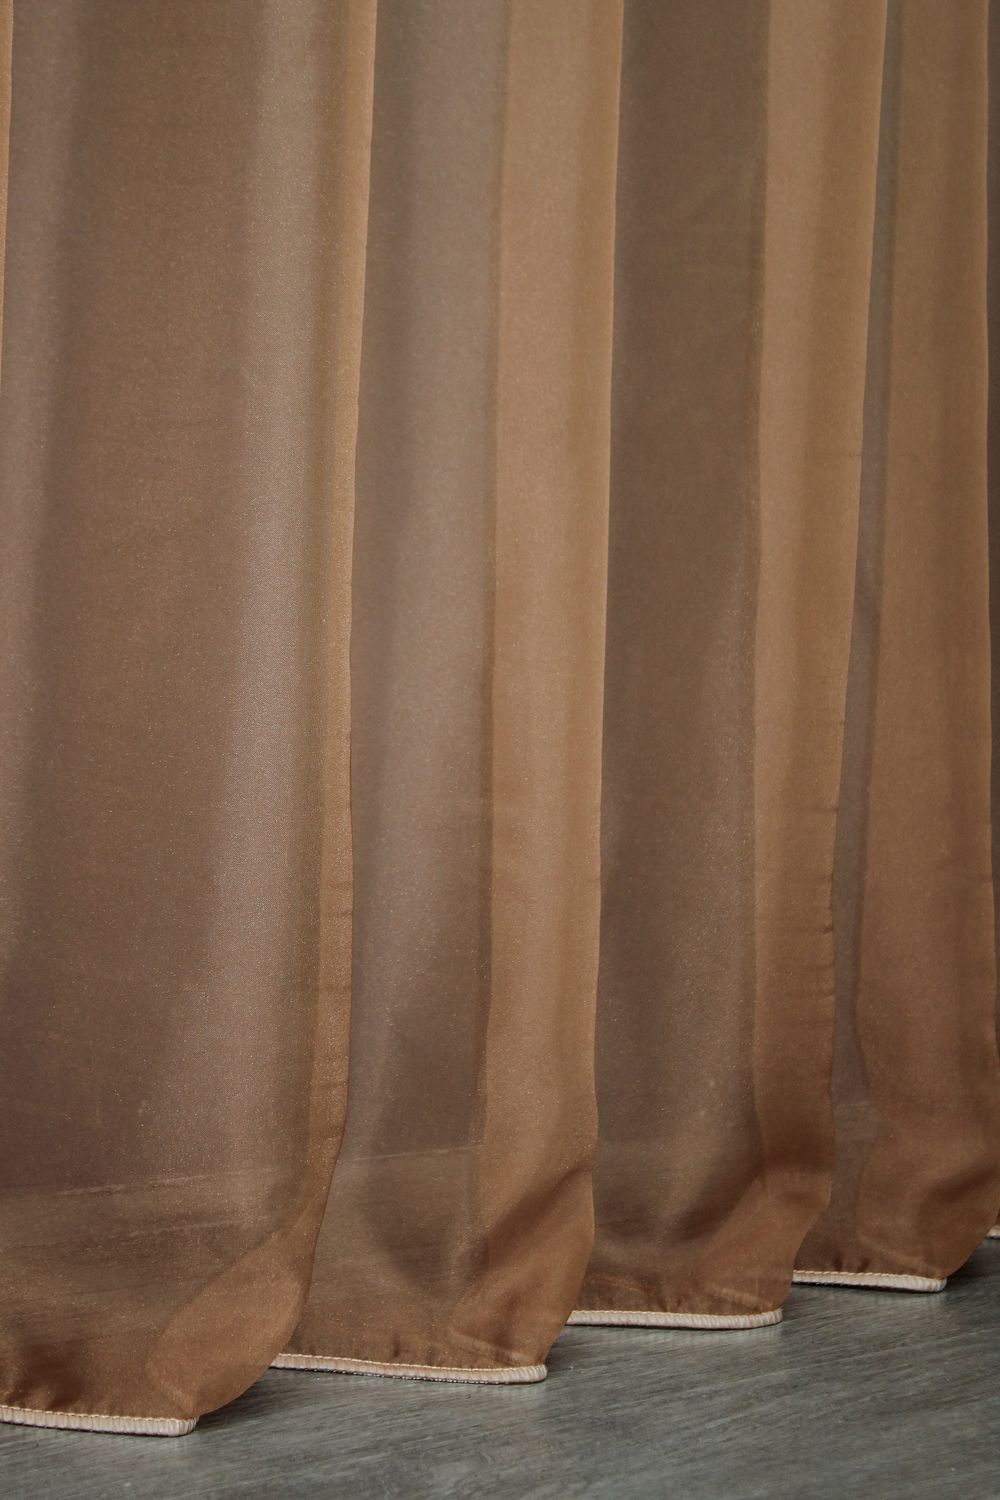 Тюль растяжка "Омбре" из шифона цвет коричневый с белым 751т, Тюль на метраж, Нужную Вам ширину указывайте при покупке. (Ширина набирается по длине рулона.), 2,5 м.